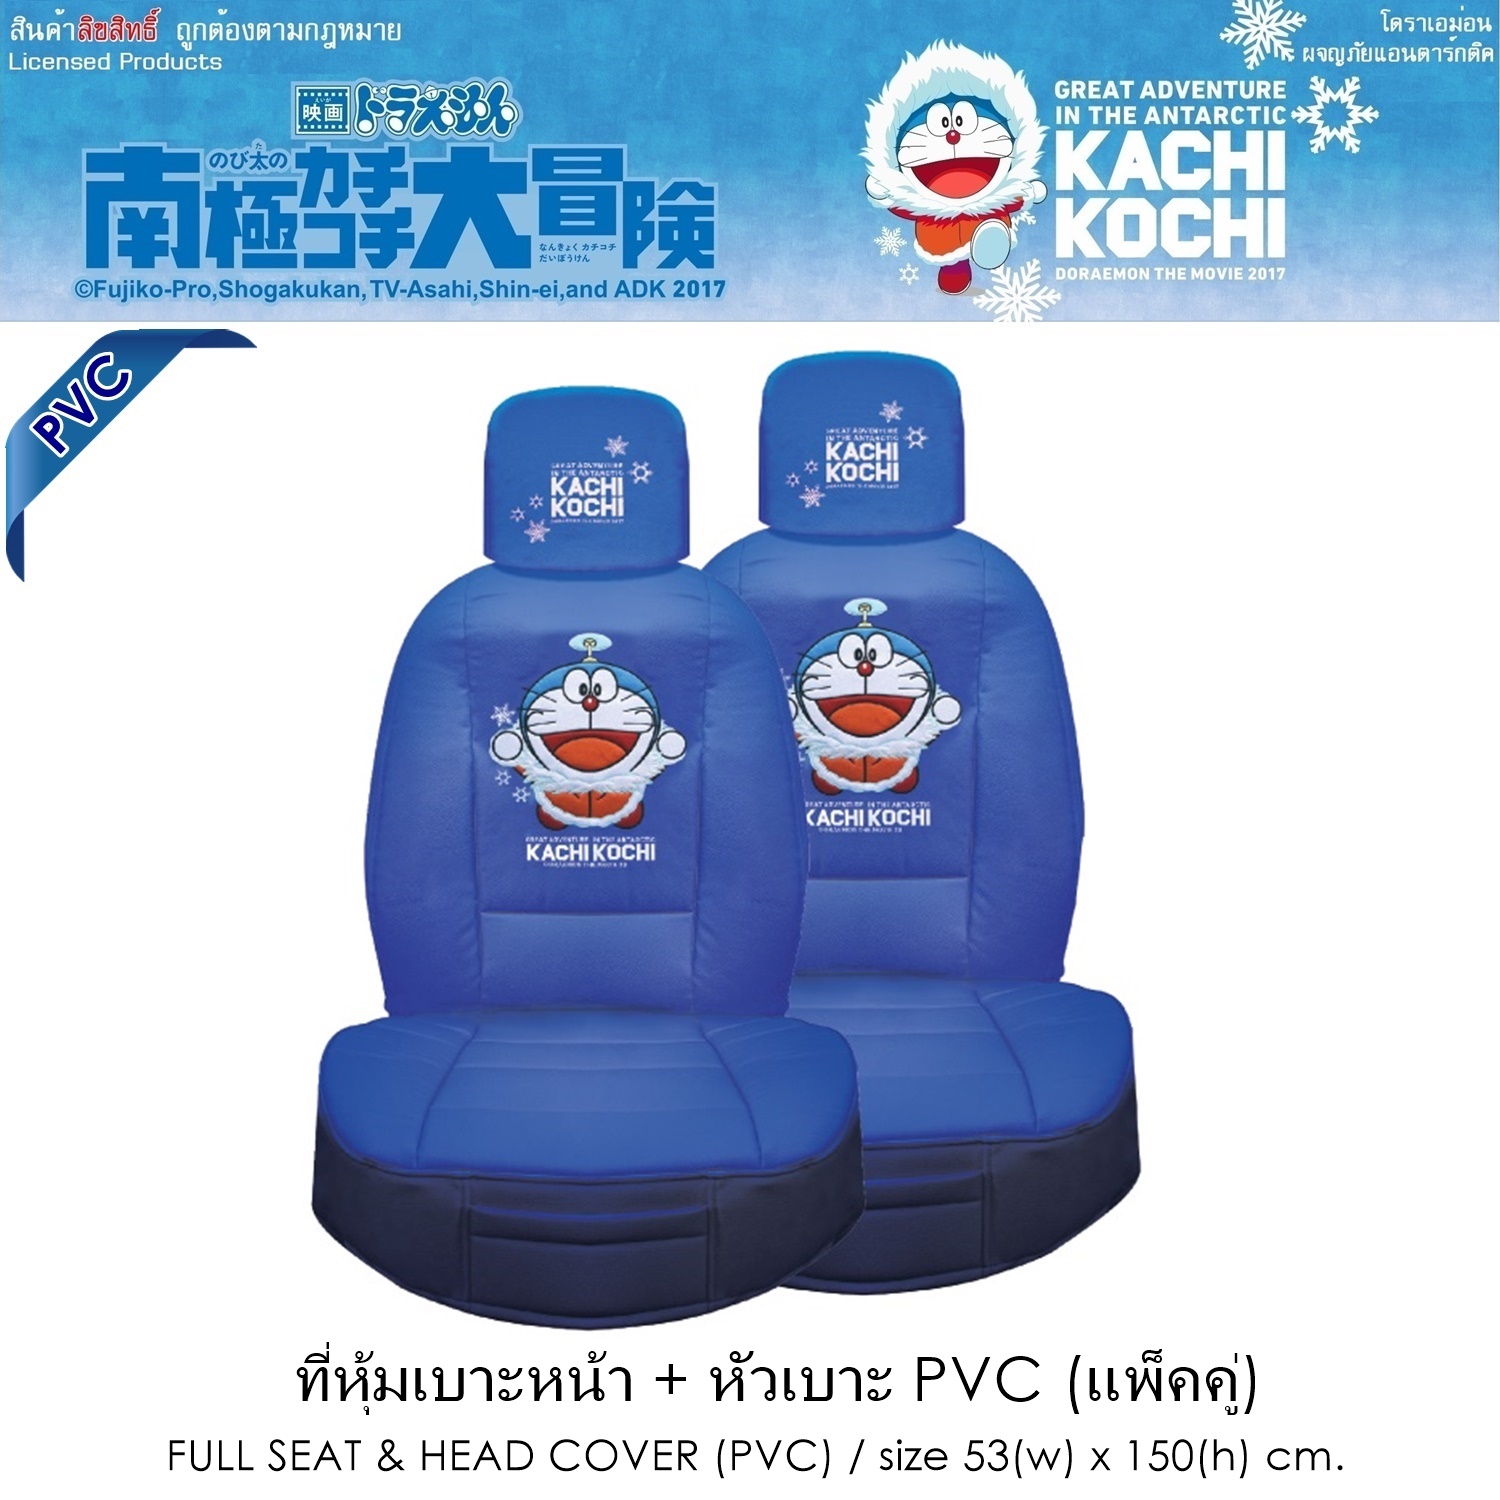 PVC DORAEMON KACHI KOCHI หุ้มเบาะหนัง พร้อมหัวเบาะ แพ็คคู่ รวม 4 ชิ้น งาน PVC สีแดง-ดำ ลิขสิทธิ์แท้